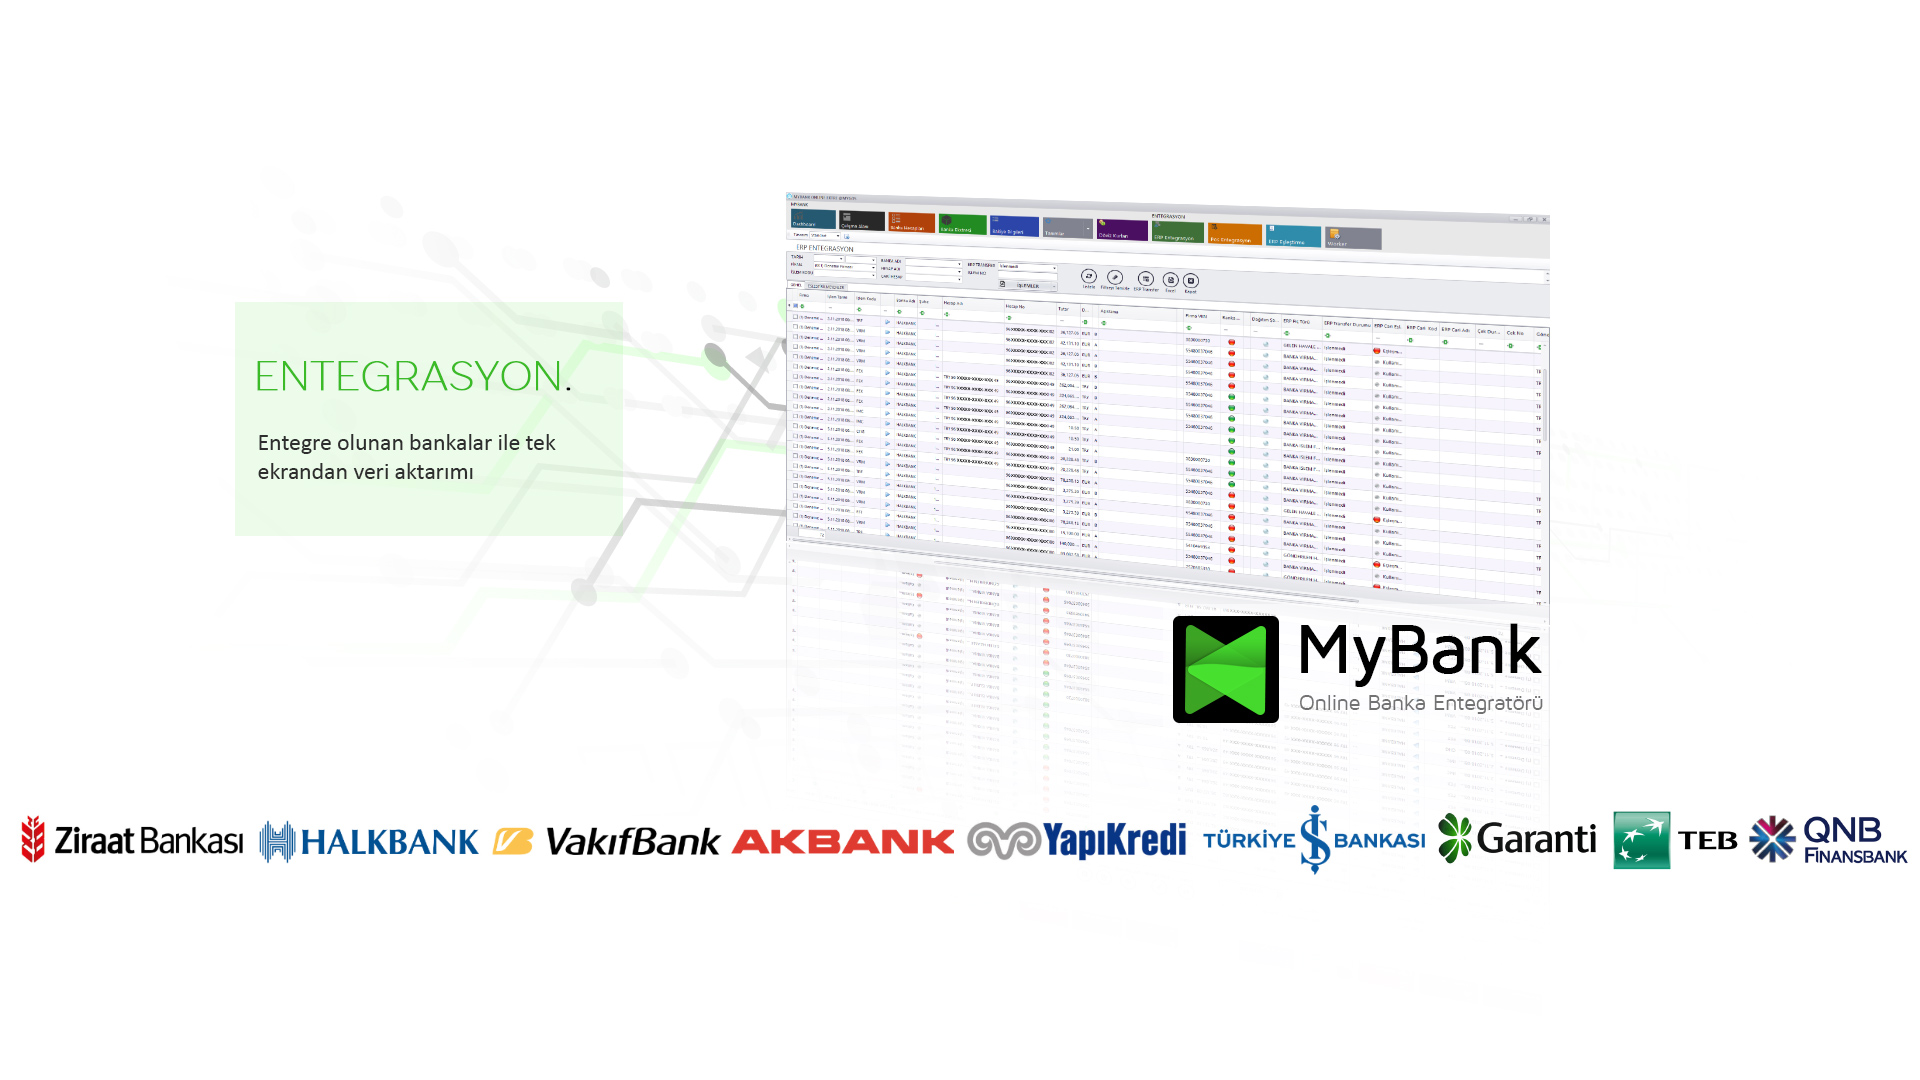 Entegrasyon, Entegre olunan bankalar ile tek ekranda veri aktarımı